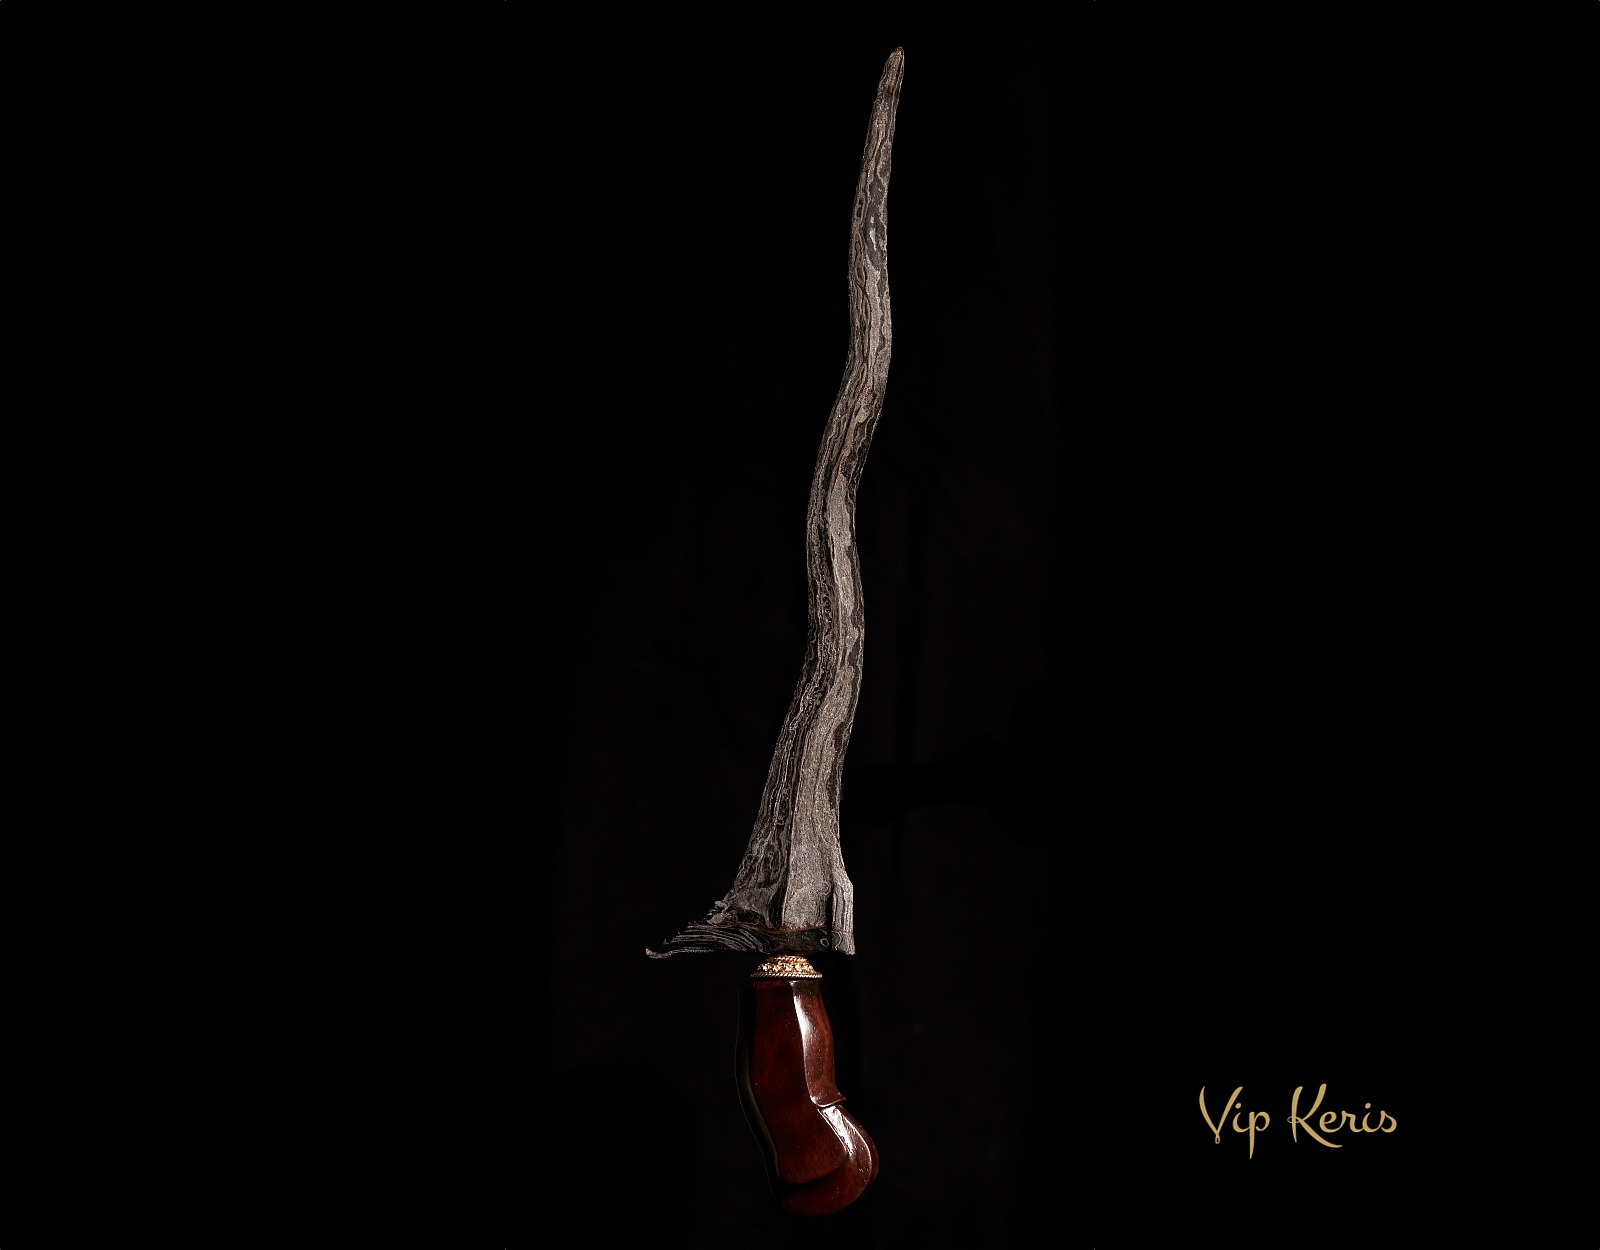 Ритуальный кинжал Крис Kolonada, кармический фото VipKeris